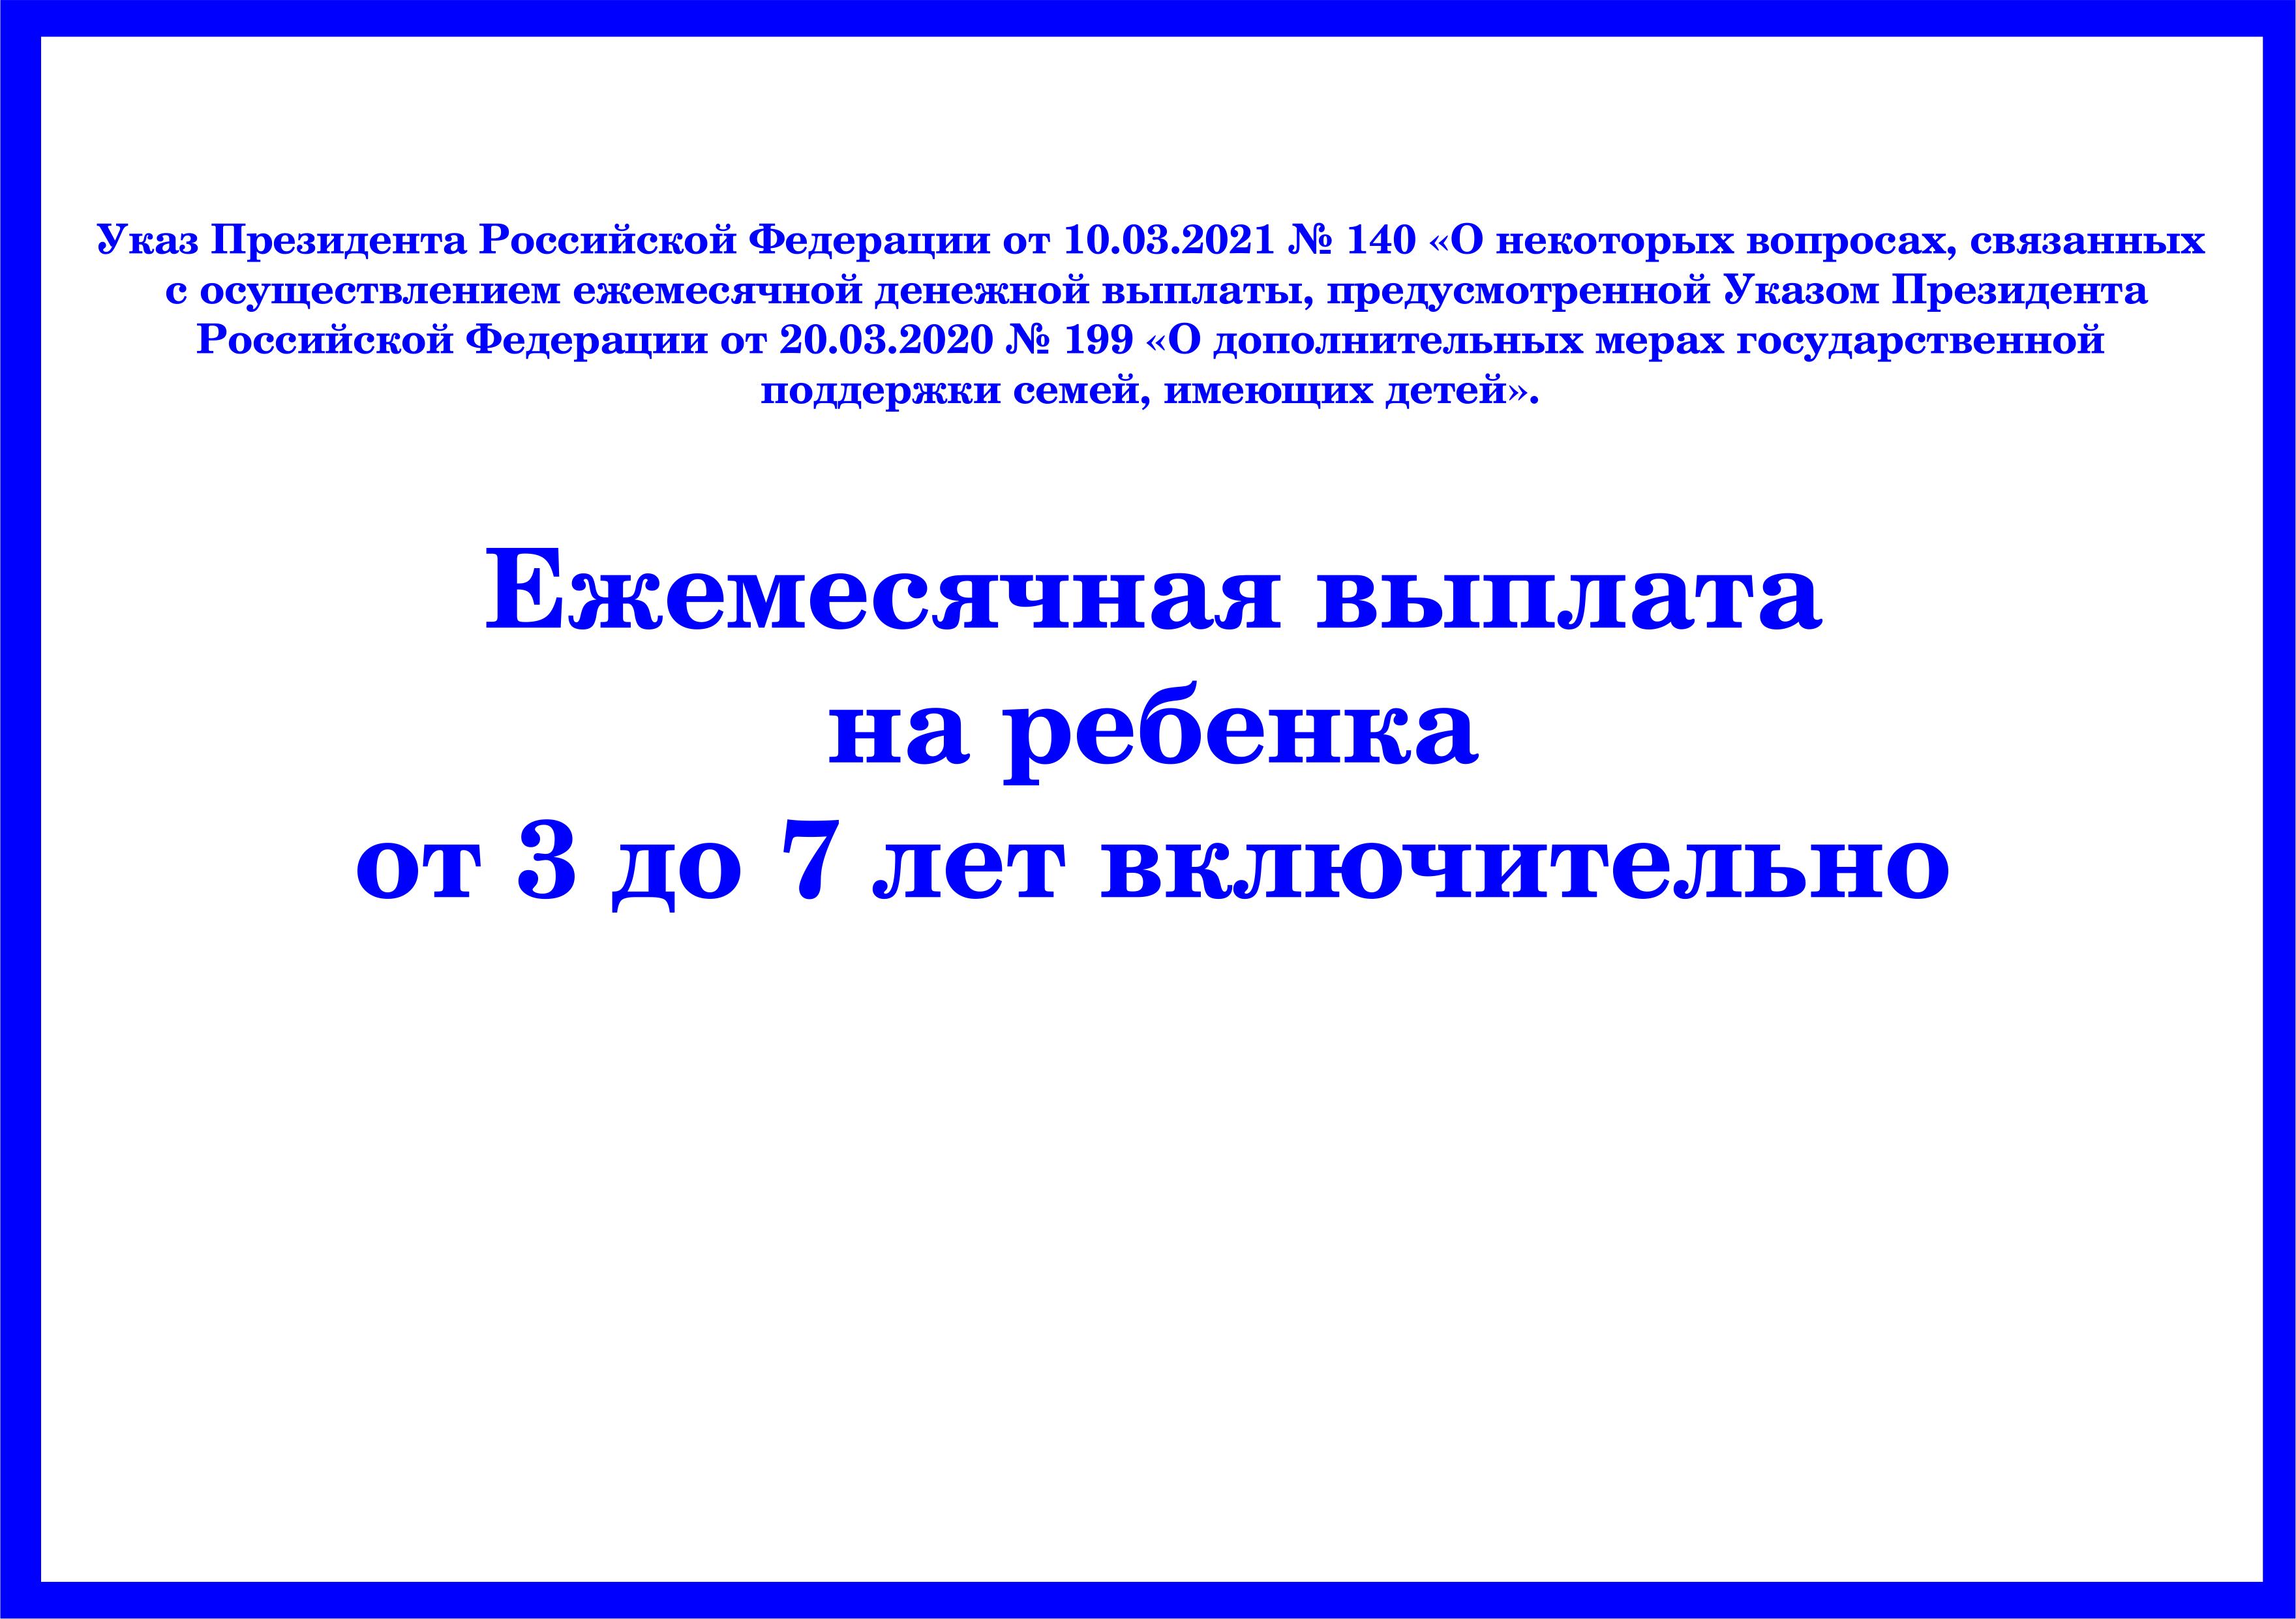 Отдел социальной защиты населения администрации города Кузнецка сообщает, что с 1 апреля изменится порядок начисления выплат на детей от 3 до 7 лет включительно